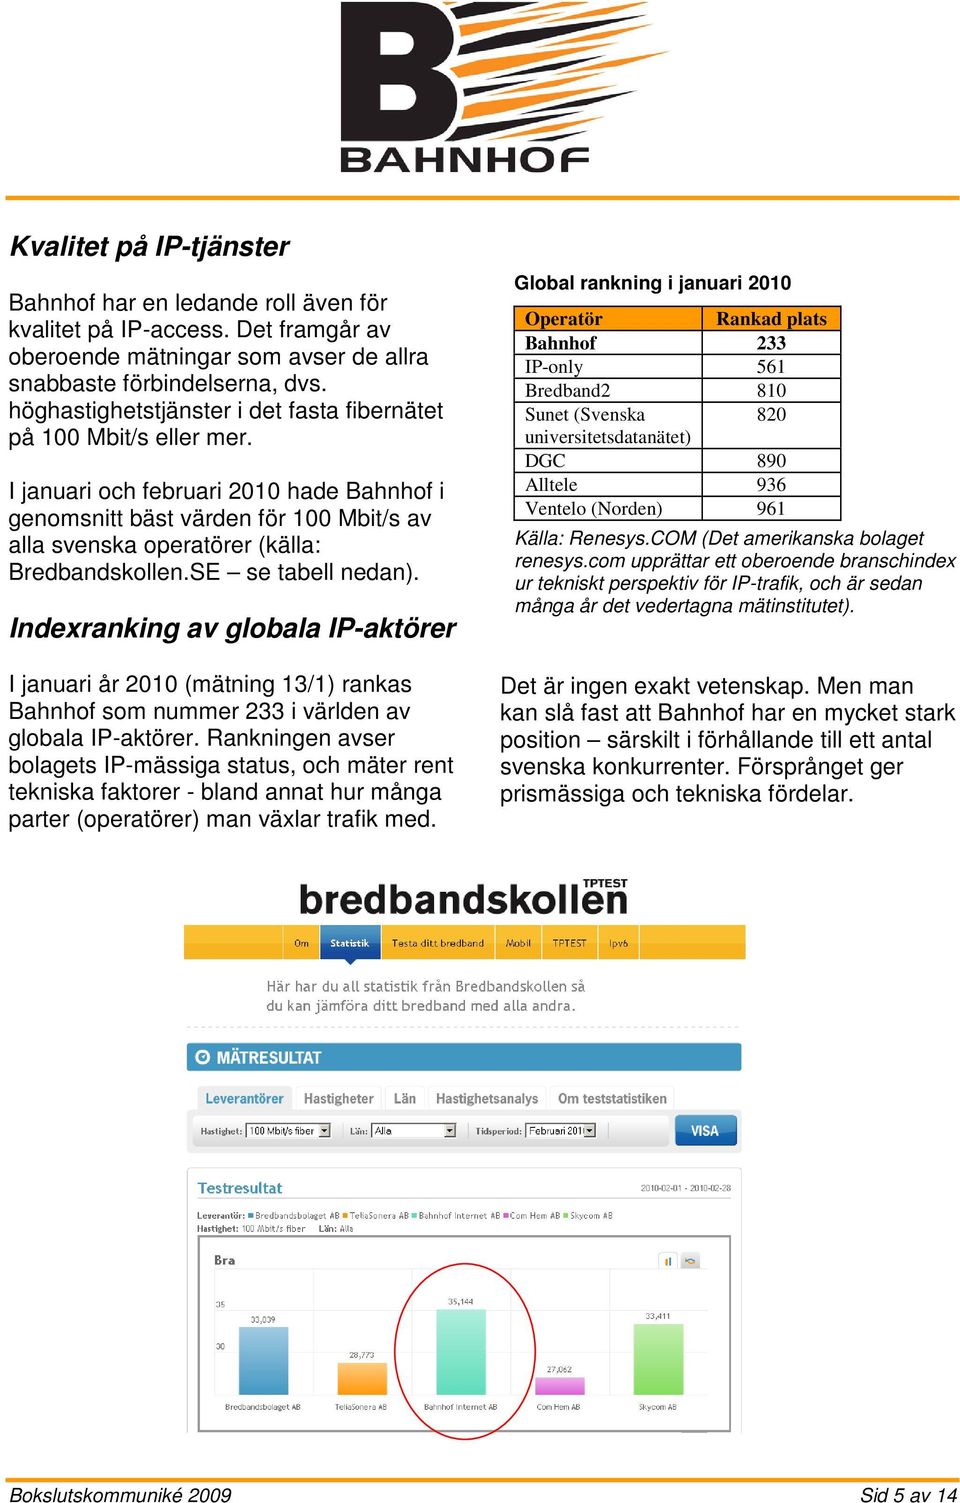 I januari och februari 2010 hade Bahnhof i genomsnitt bäst värden för 100 Mbit/s av alla svenska operatörer (källa: Bredbandskollen.SE se tabell nedan).